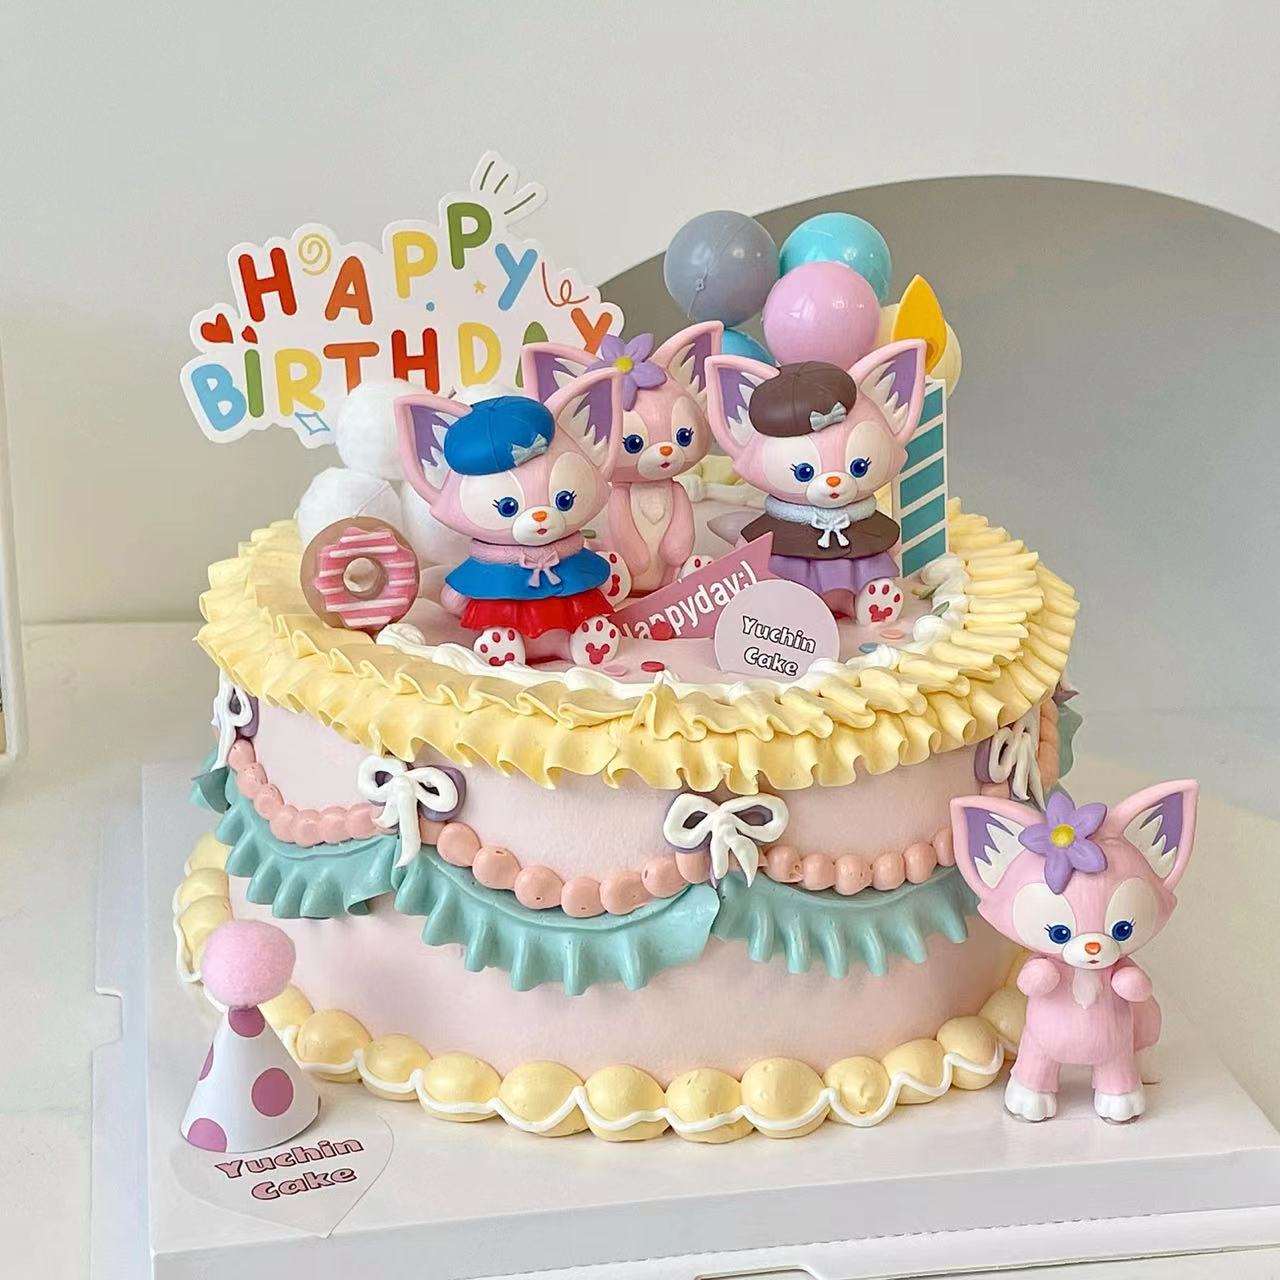 玲娜蛋糕装饰粉色卡通小狐狸妲己摆件女孩生日派对甜品台烘焙插件